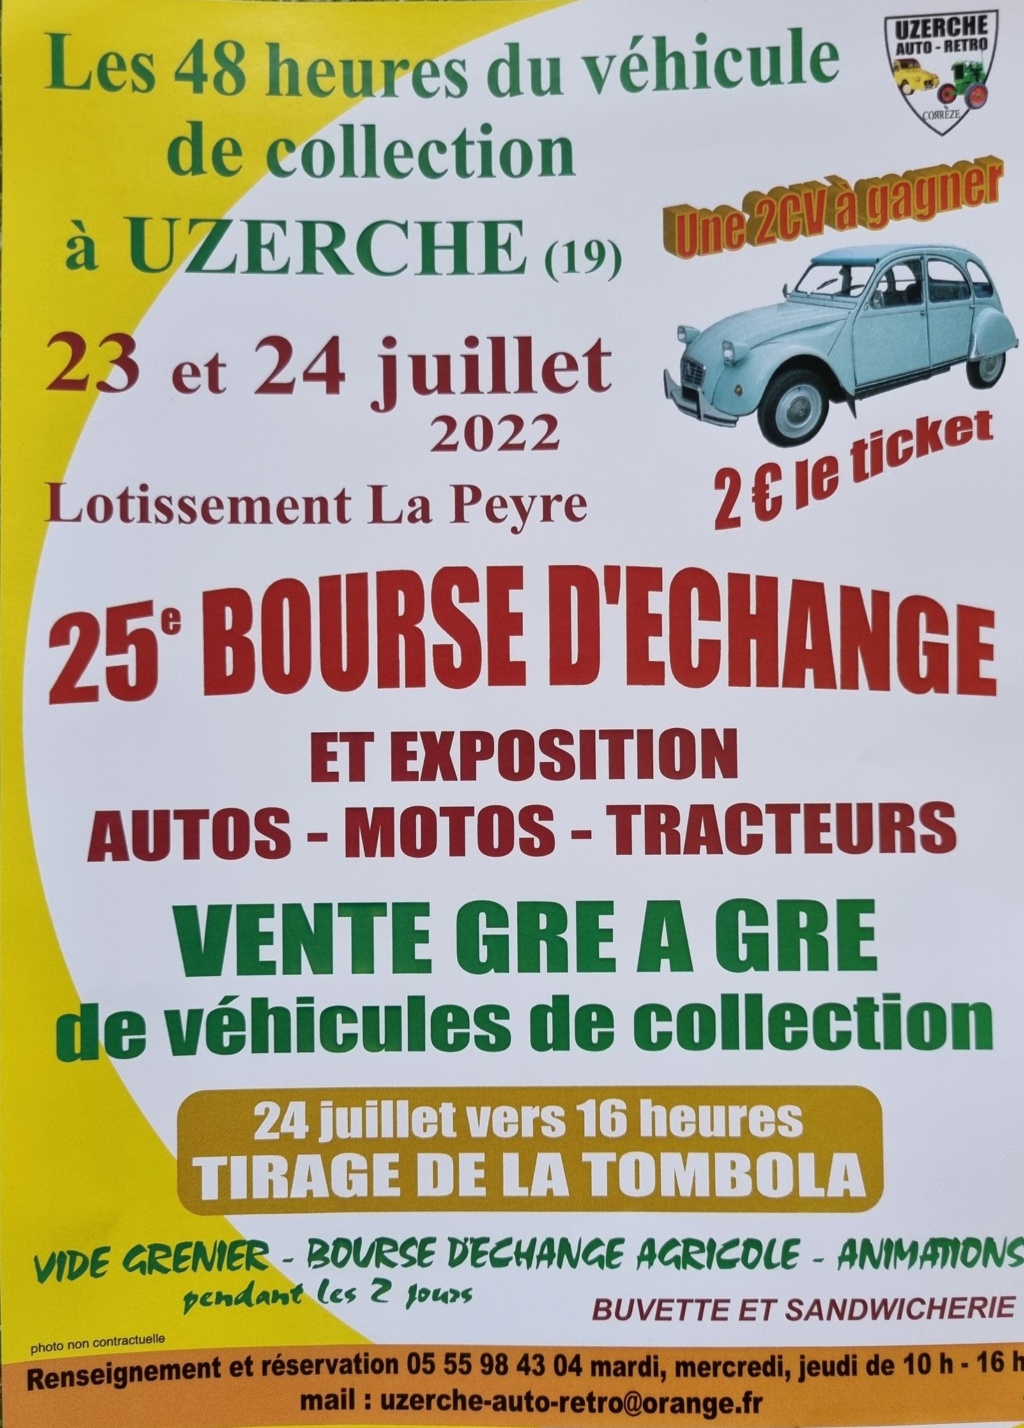 19 -UZERCHE les 23 et 24/07/2022 expo - bourse auto/moto/tracteurs 29406610